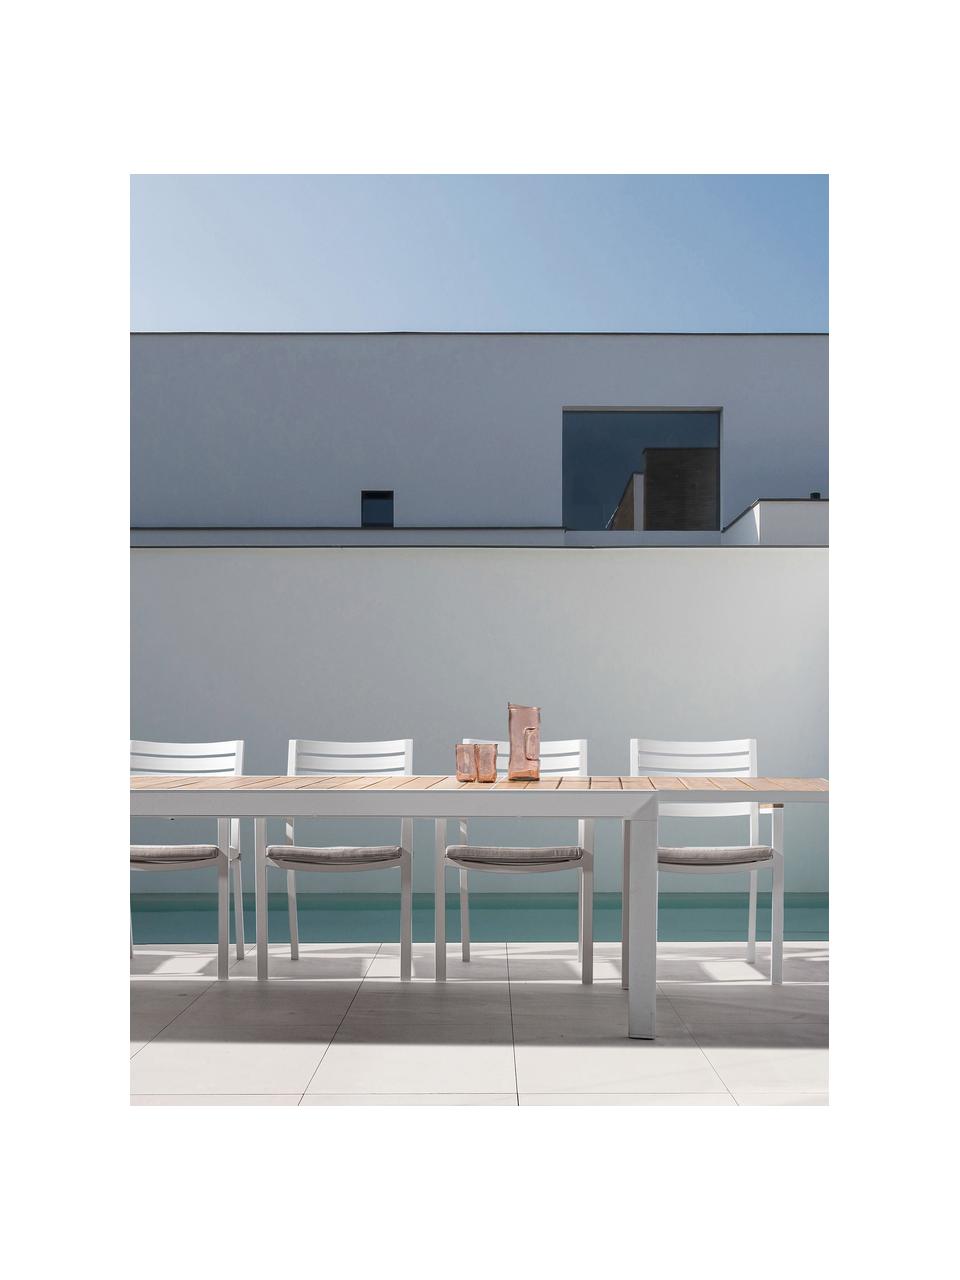 Table de jardin extensible Belmar, 220 - 340 x 100 cm, Aluminium, revêtement par poudre, Blanc, aspect bois, larg. 220 - 340 x prof. 100 cm